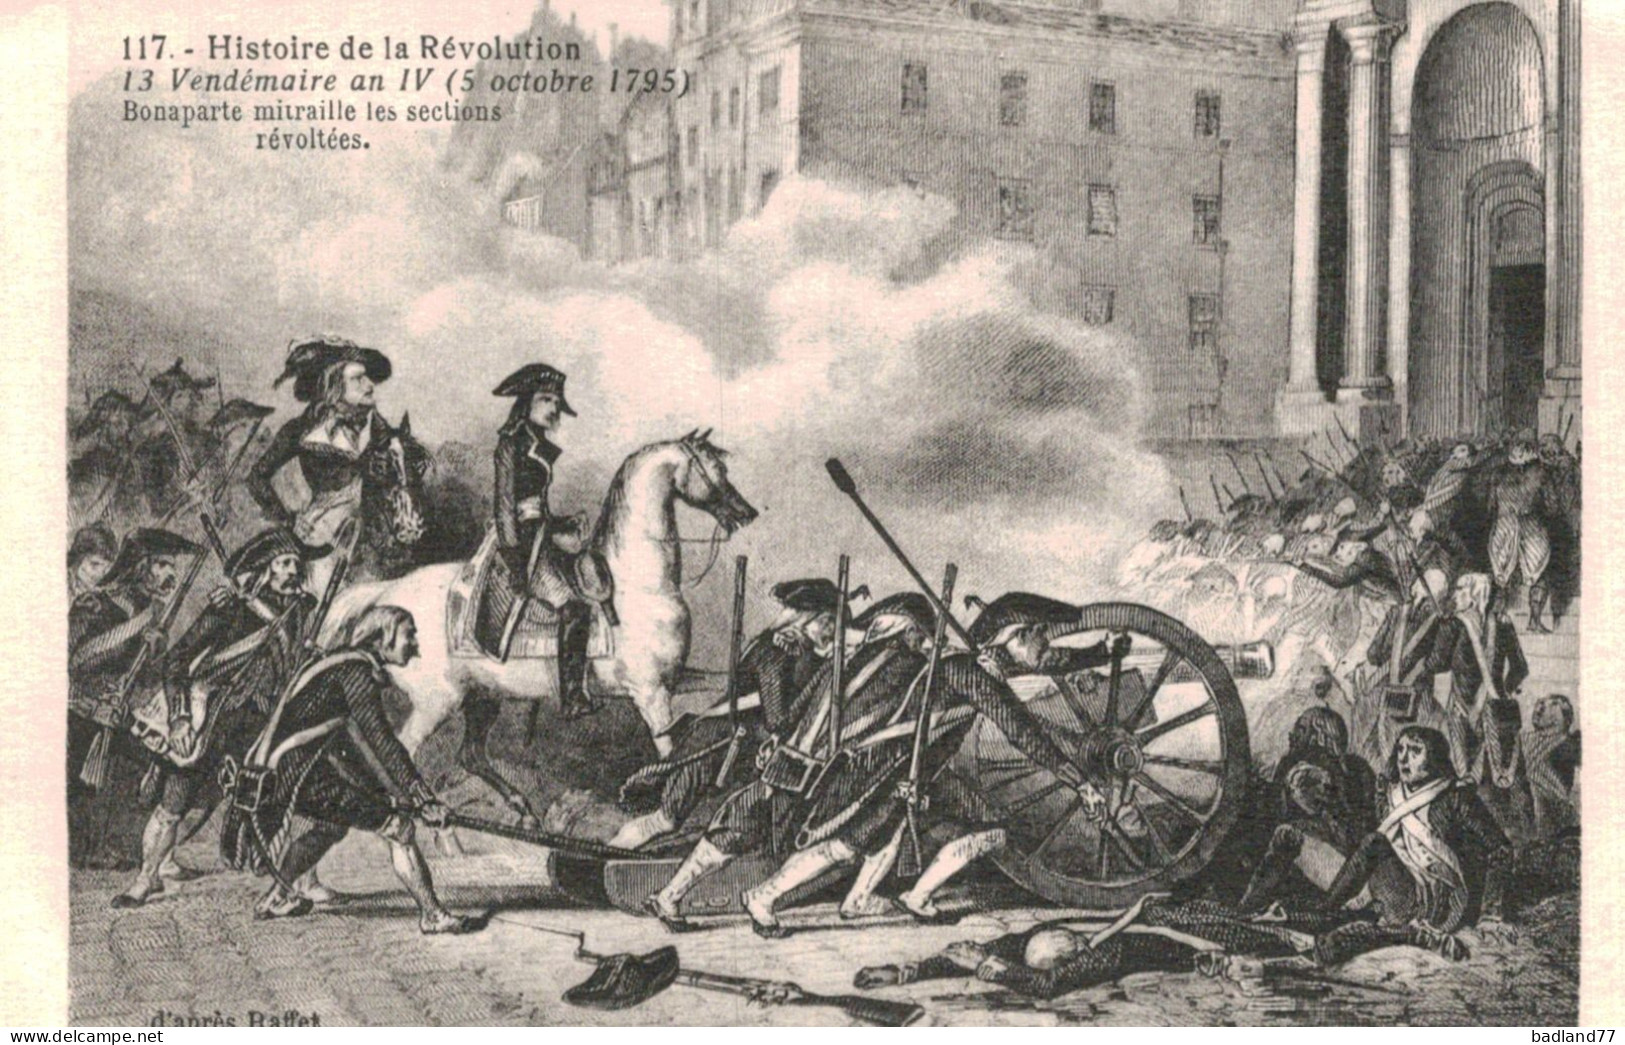 Lot 19 cartes postales - Histoire de la Révolution